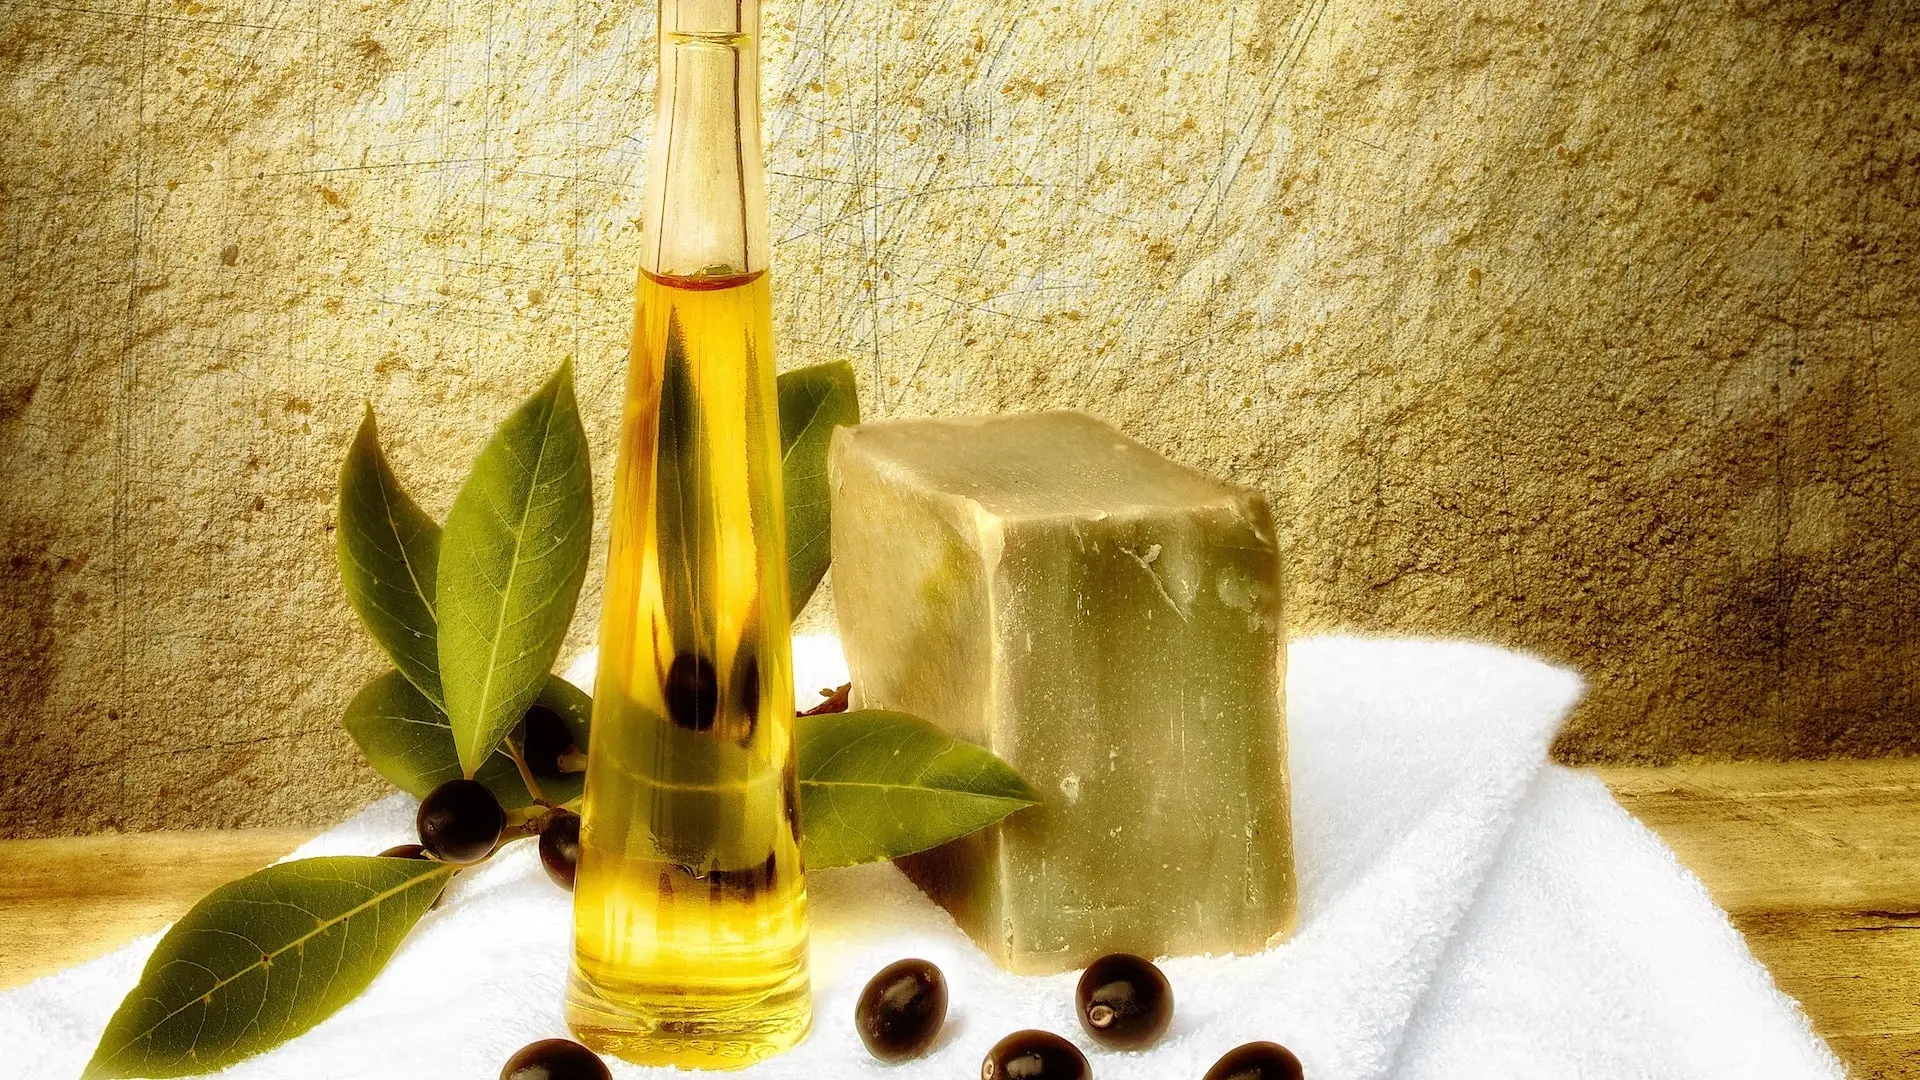 Aleppo-Seife Inhaltsstoffe - Lorbeerblätter und Olivenöl Mit Aleppo Seife